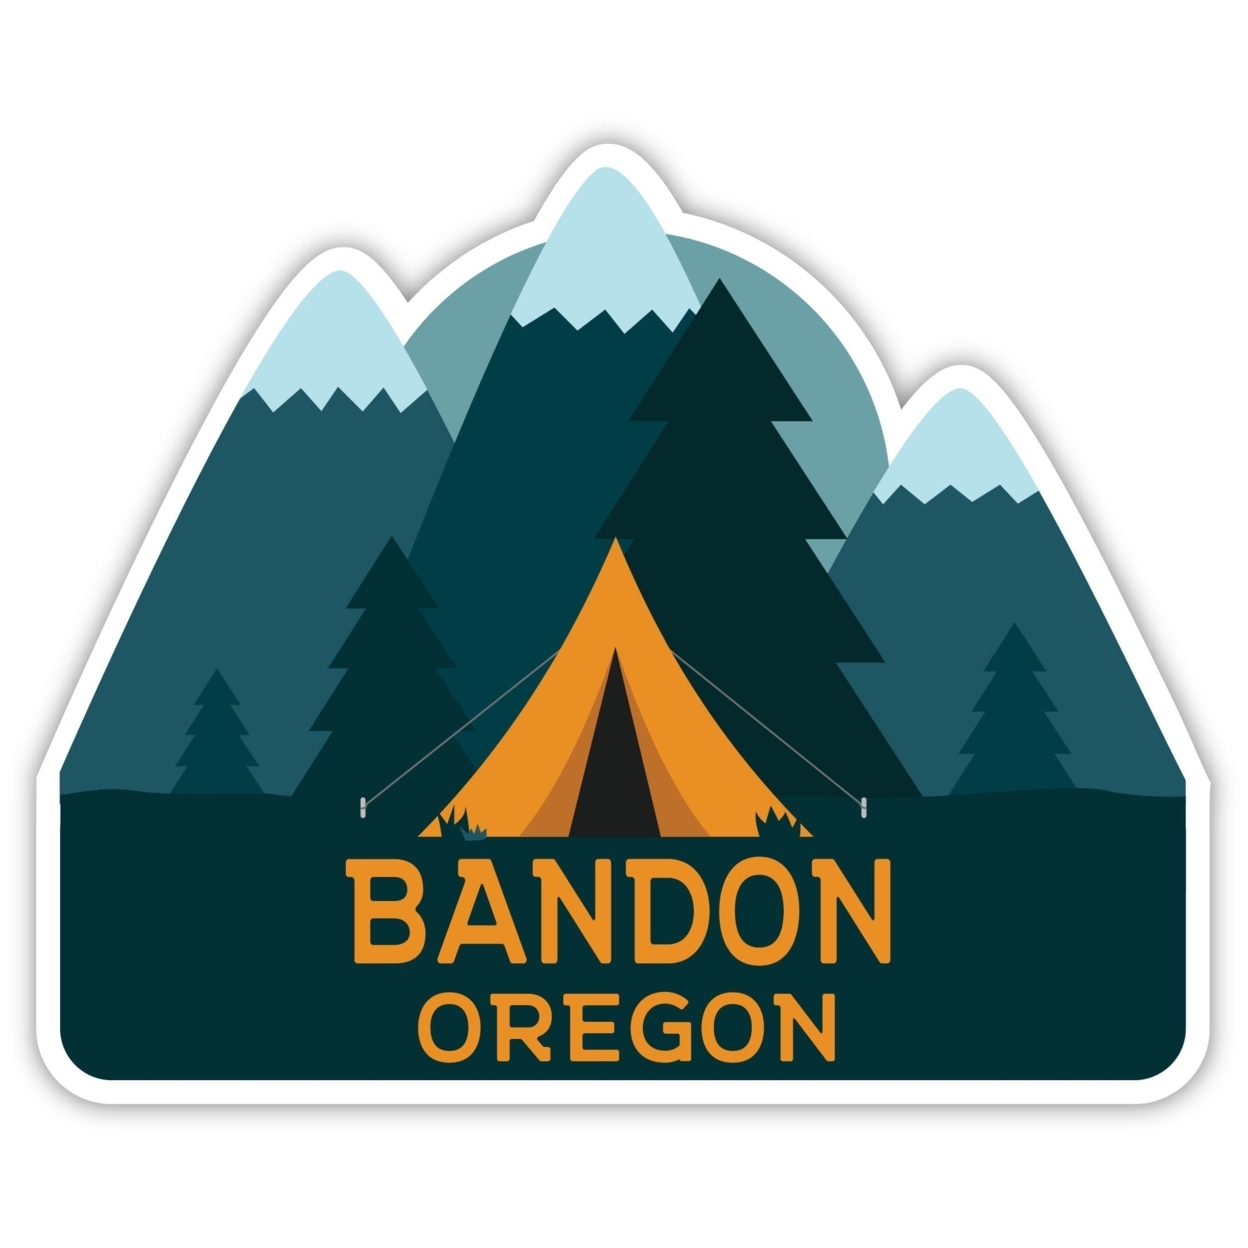 Bandon Oregon Souvenir Decorative Stickers (Choose Theme And Size) - Single Unit, 12-Inch, Tent